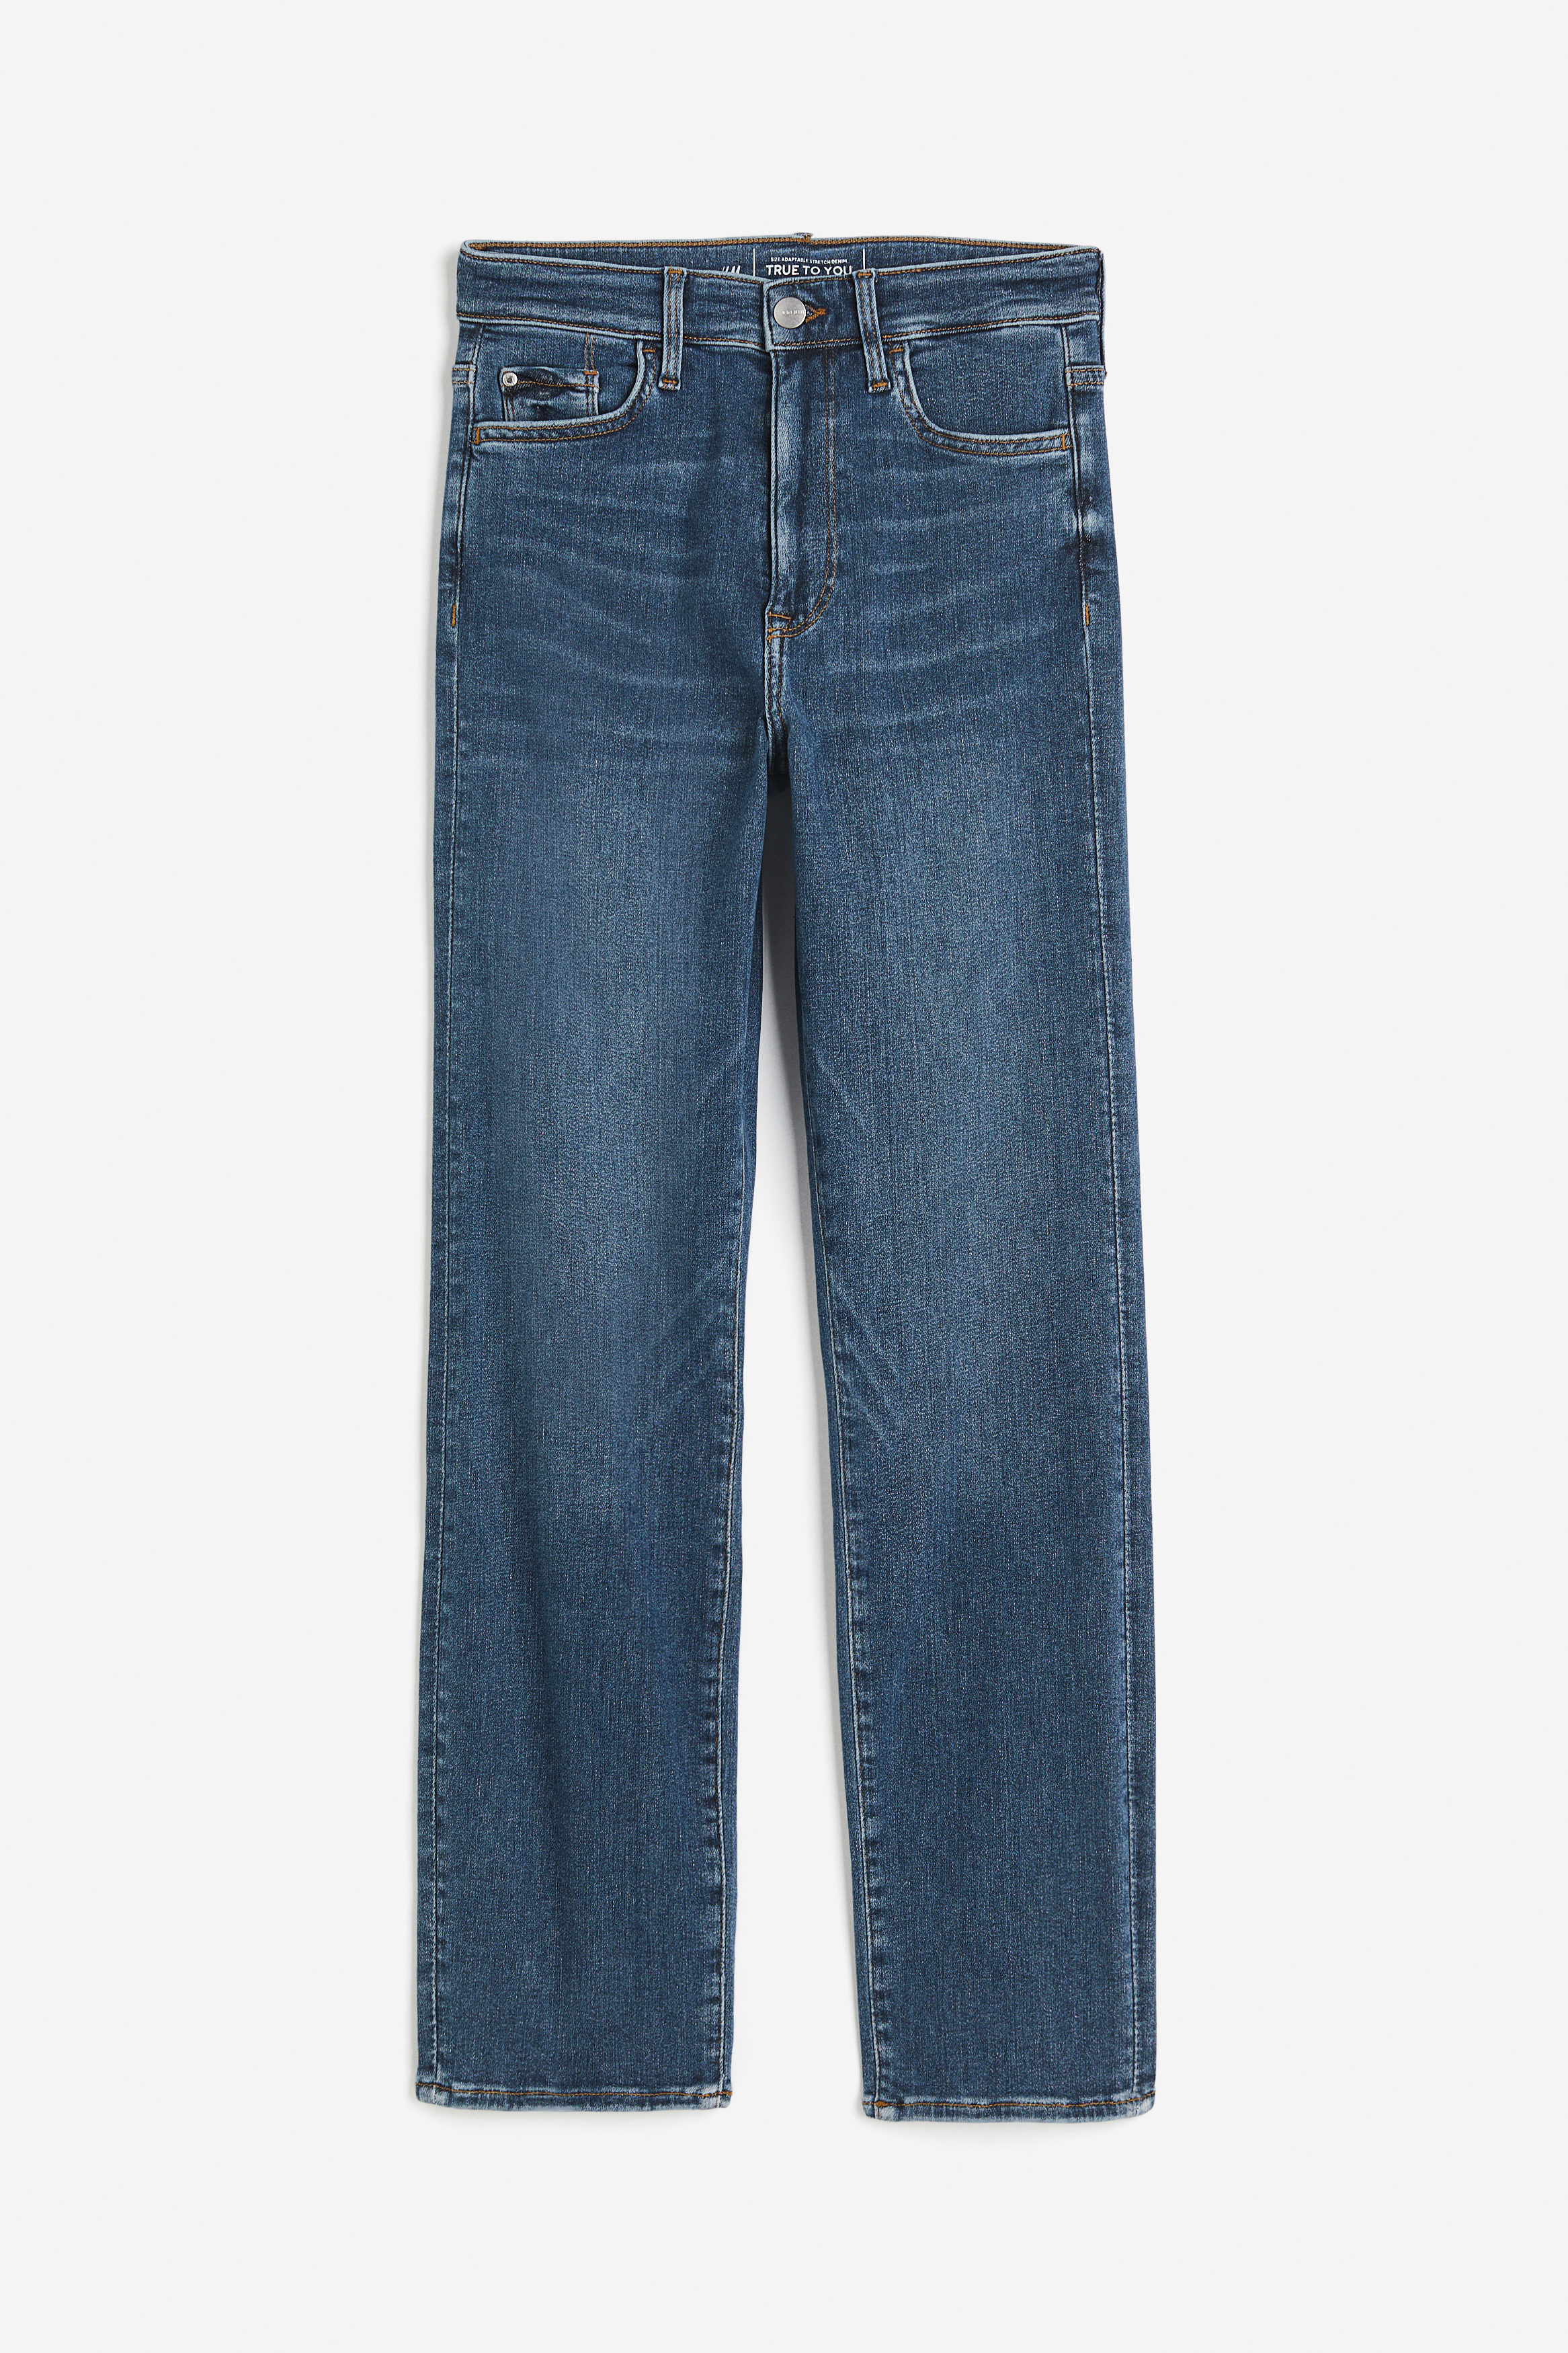 Billede af H&M True To You Slim High Jeans Denimblå, Skinny jeans. Farve: Denim blue I størrelse 4XL